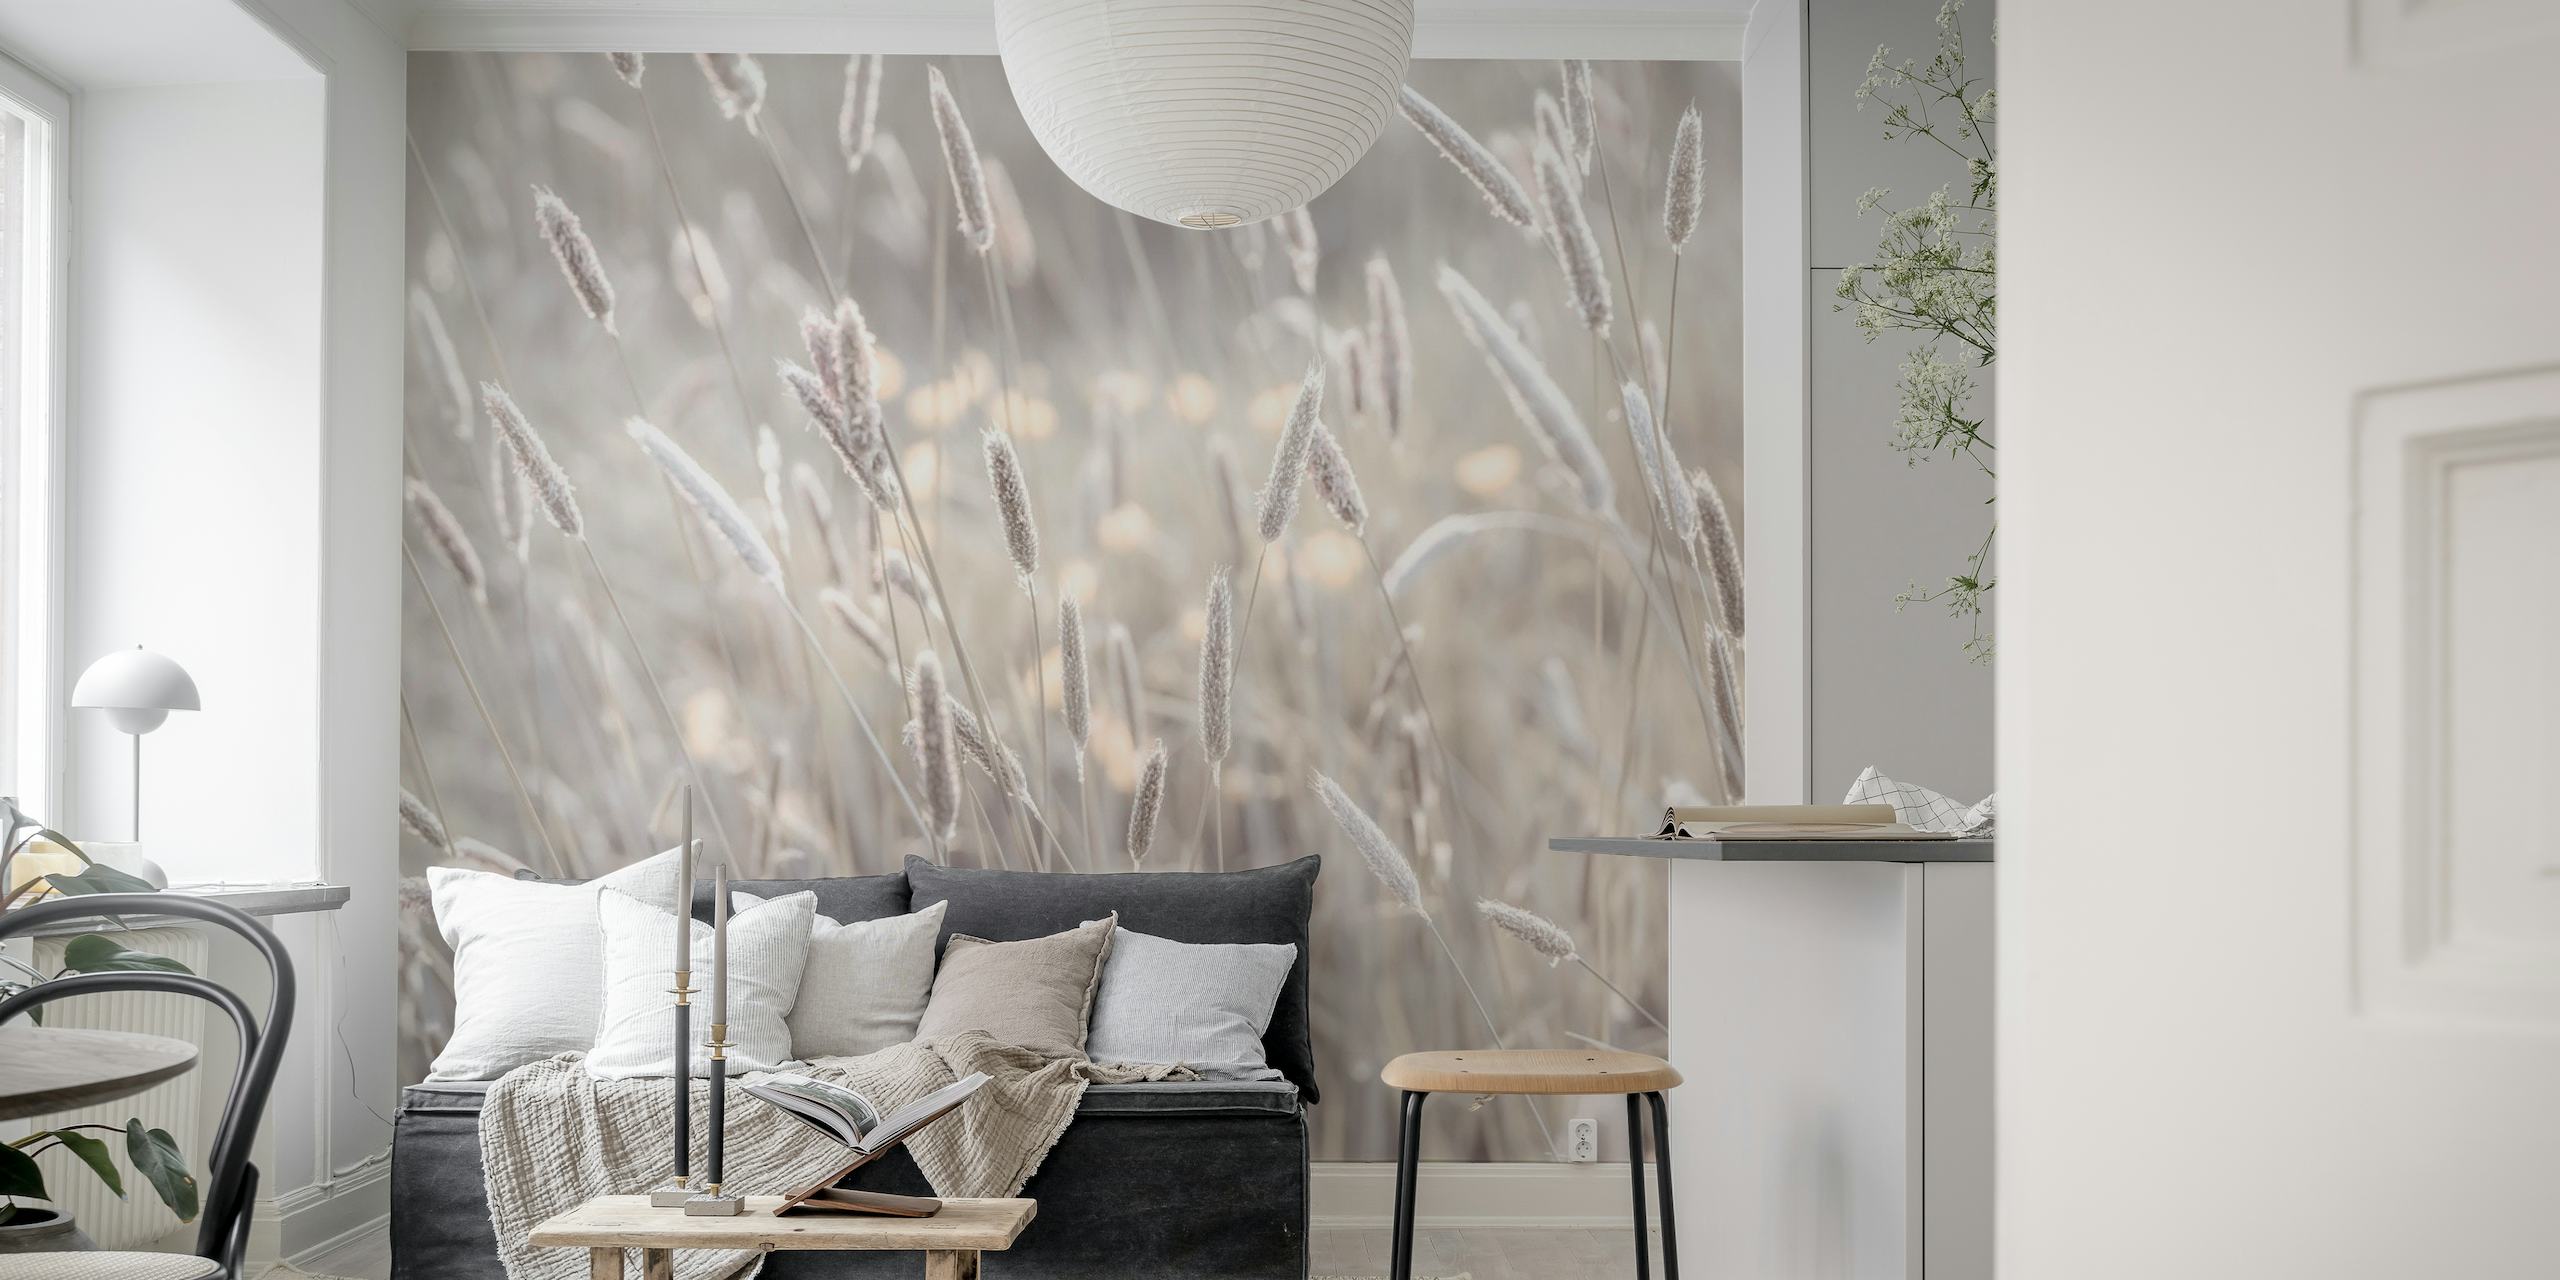 Meadow's Bliss fotobehang met zachte grijze en gebroken witte tinten, met serene weidebeelden